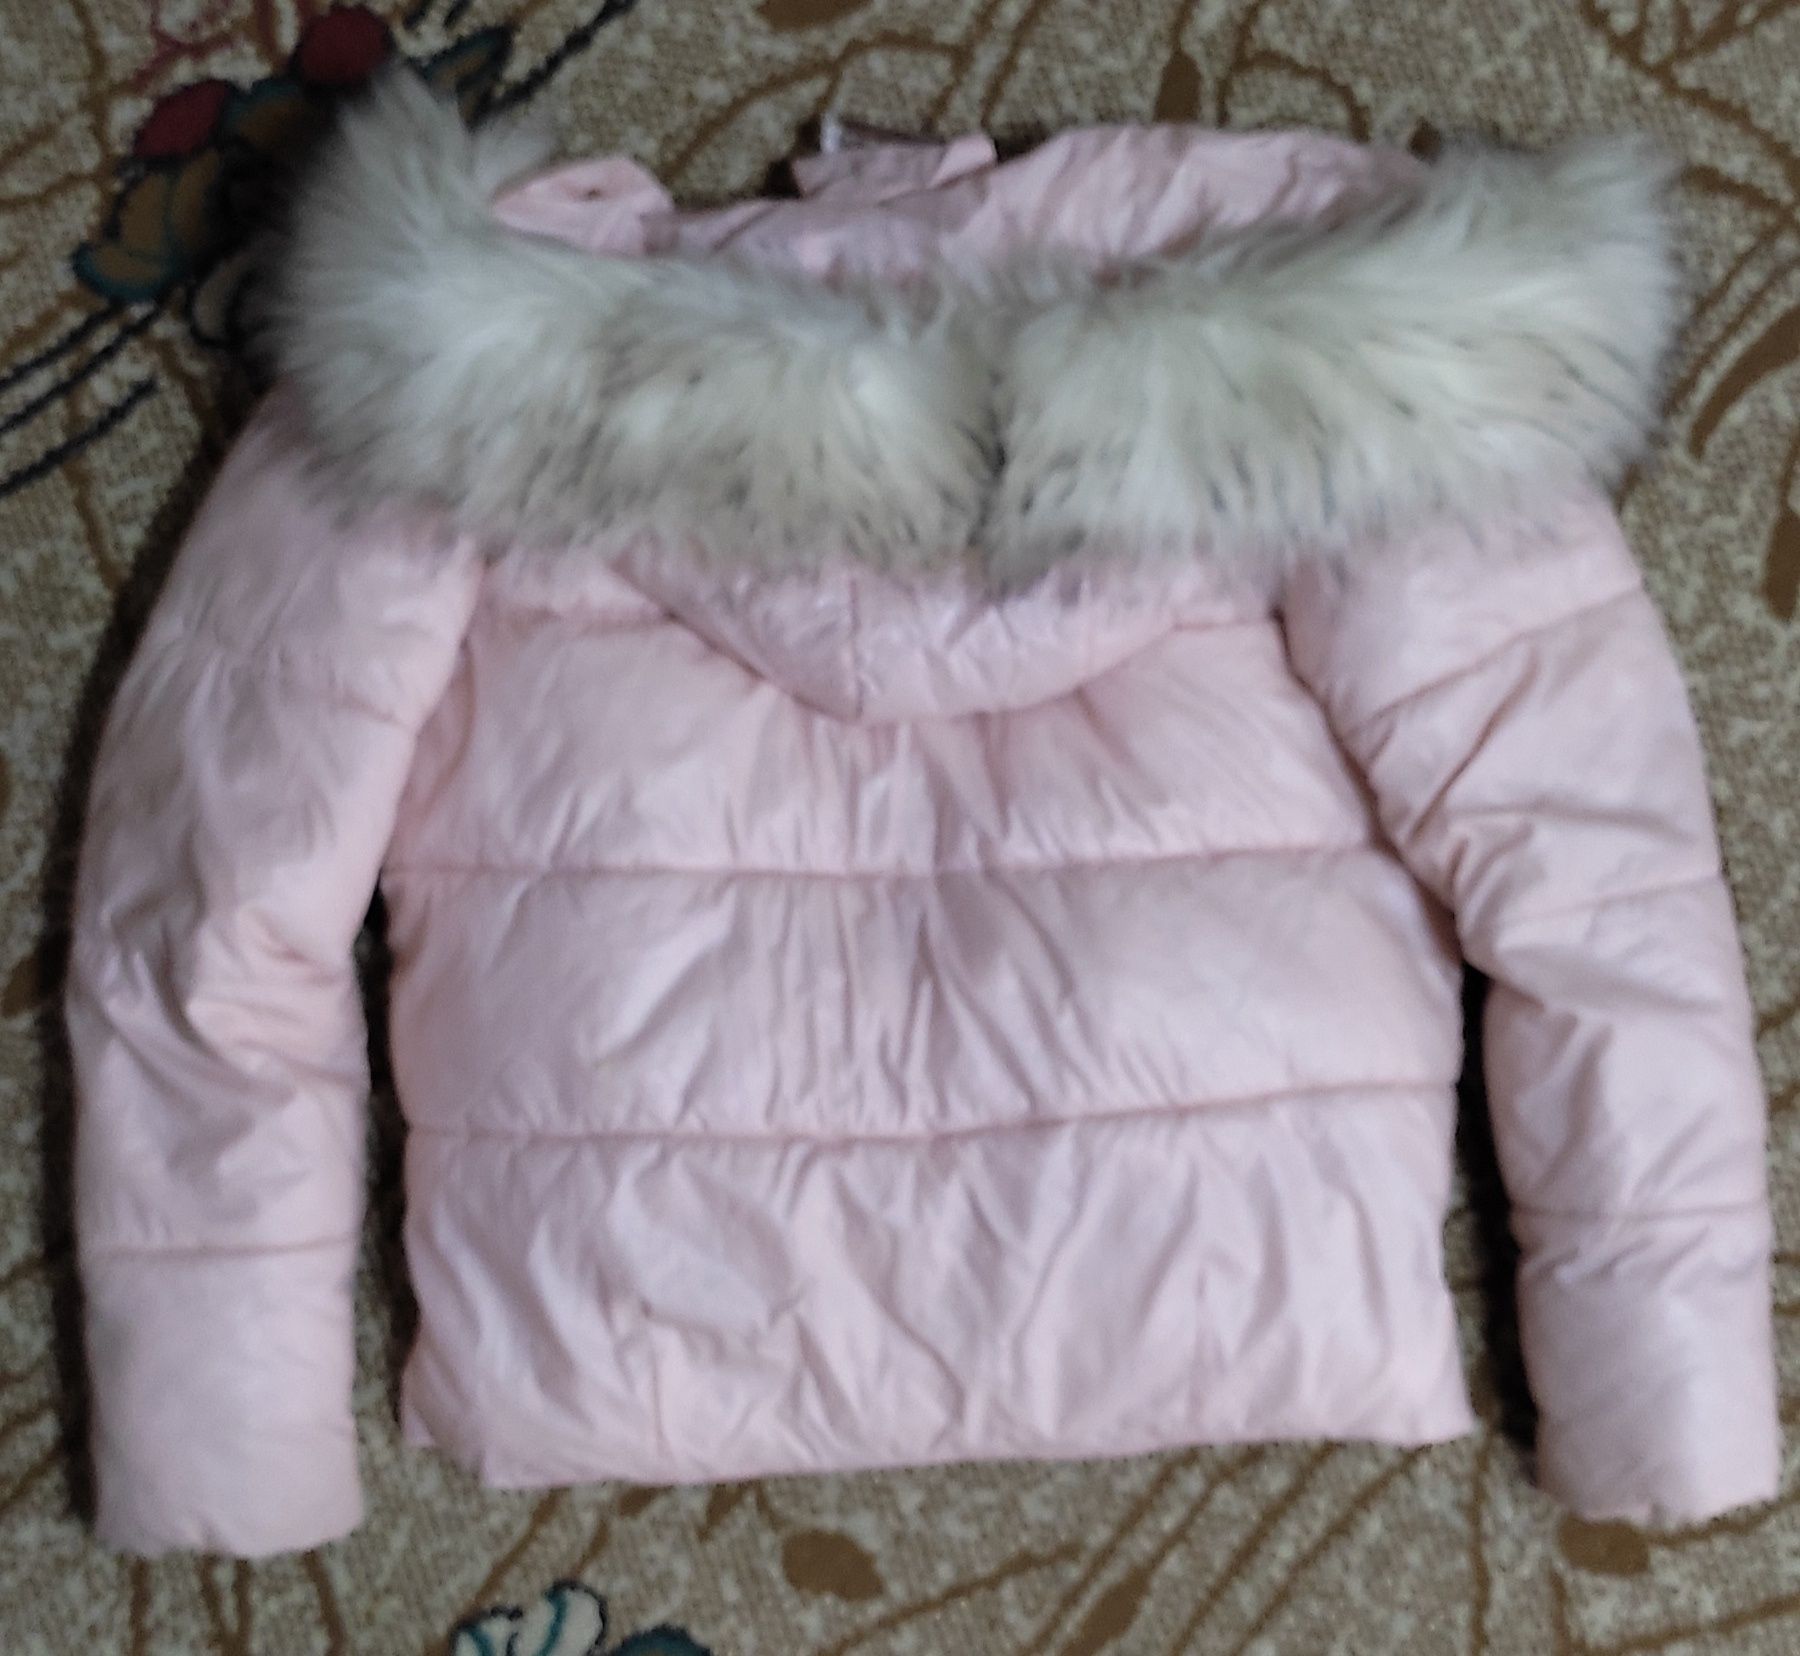 Зимняя куртка для девочки